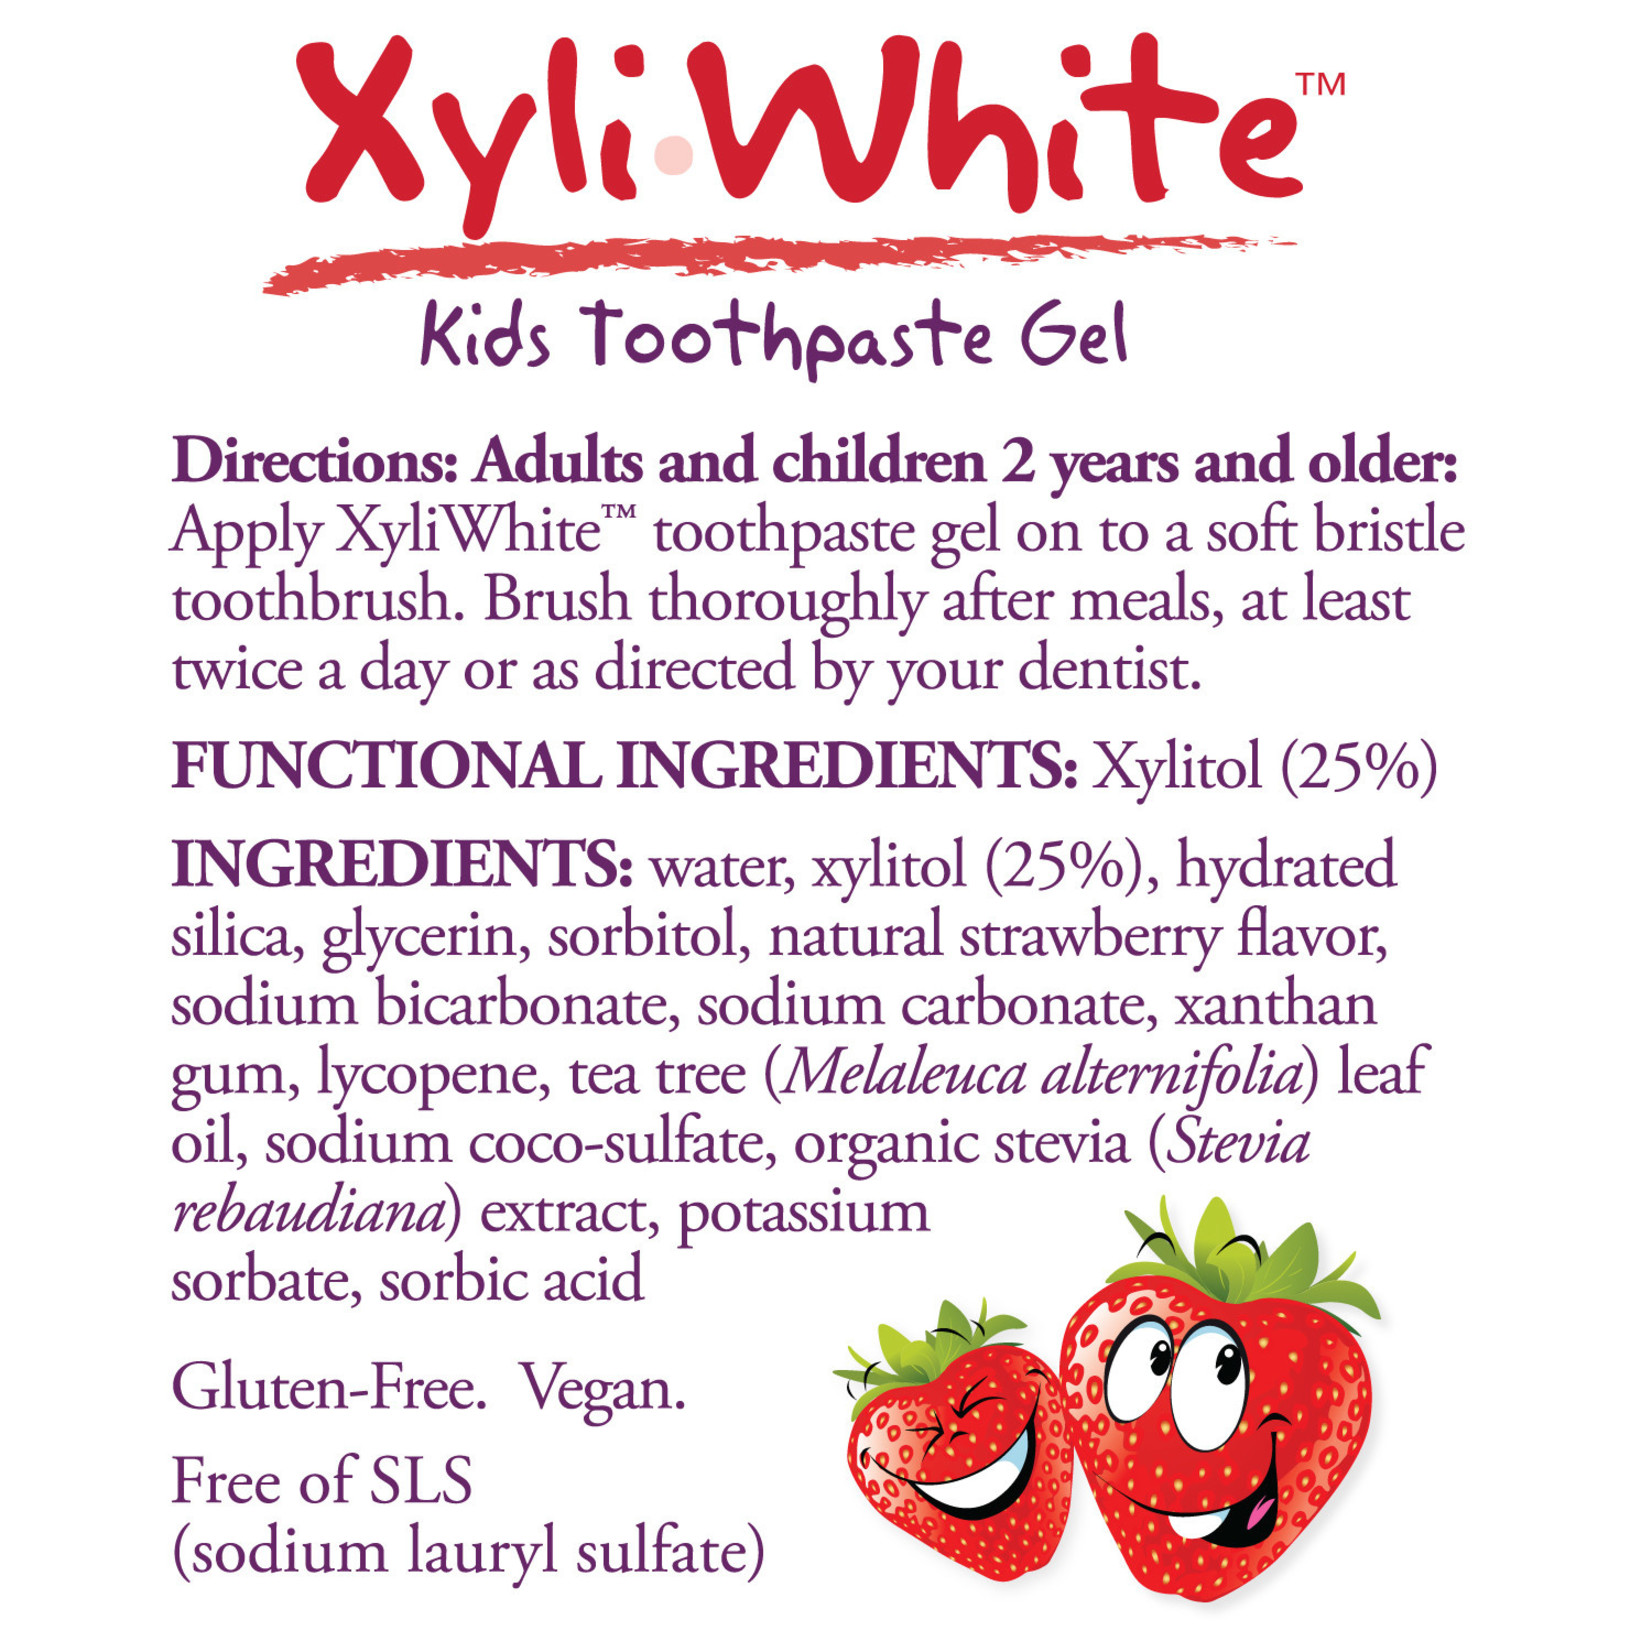 Now Now - Xyliwhite Strawberry- Kids Toothpaste - 3 oz